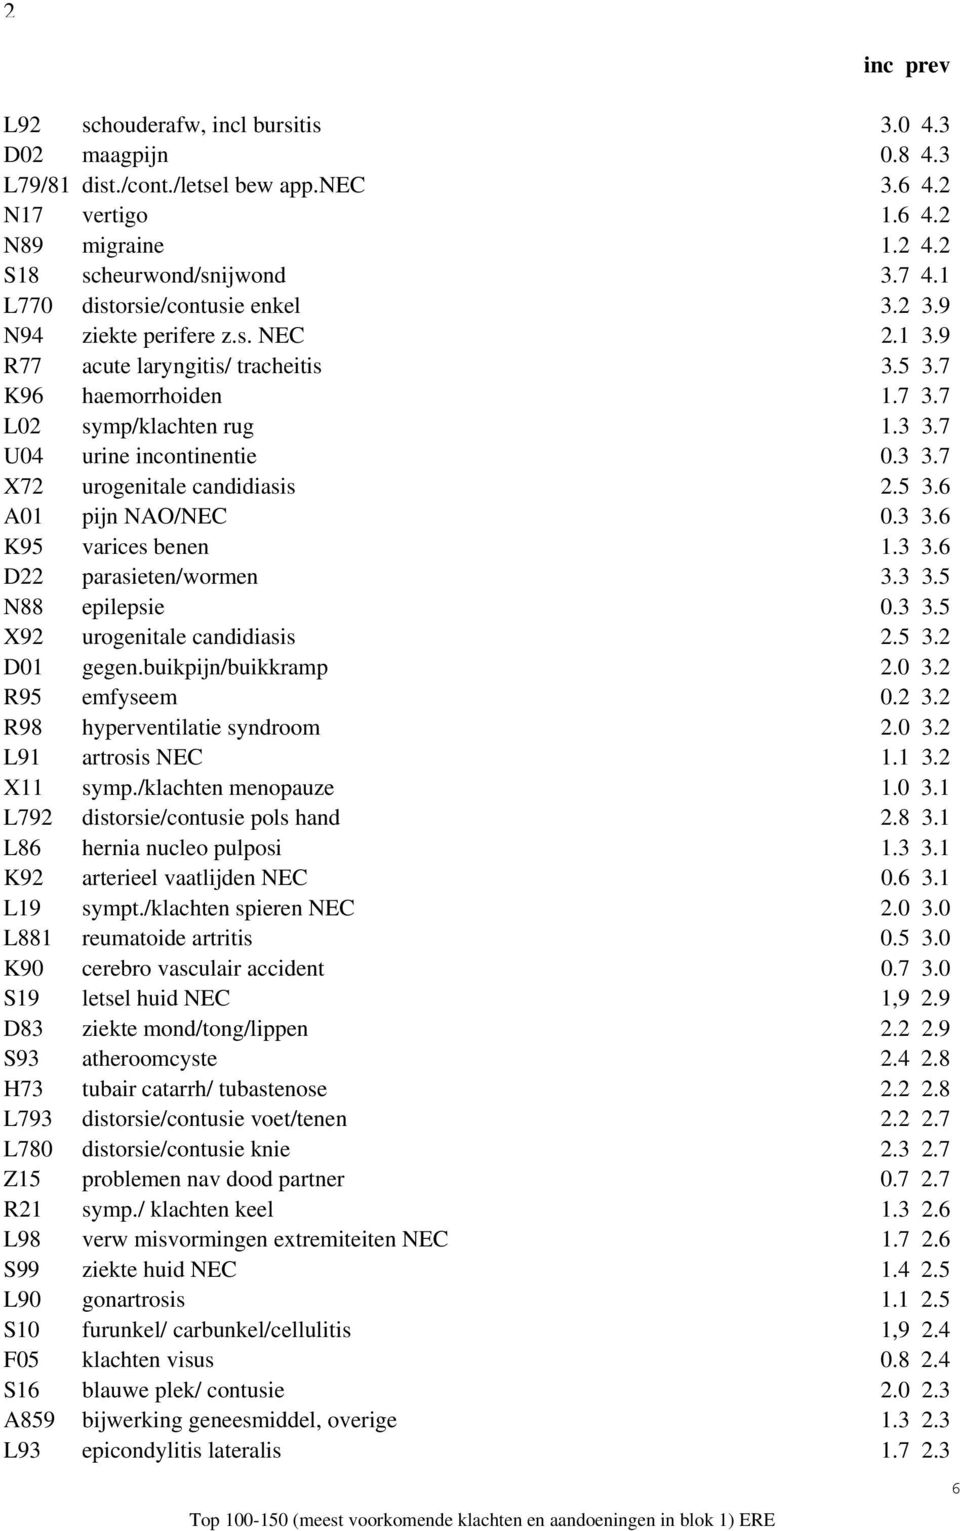 3 3.7 X72 urogenitale candidiasis 2.5 3.6 A01 pijn NAO/NEC 0.3 3.6 K95 varices benen 1.3 3.6 D22 parasieten/wormen 3.3 3.5 N88 epilepsie 0.3 3.5 X92 urogenitale candidiasis 2.5 3.2 D01 gegen.